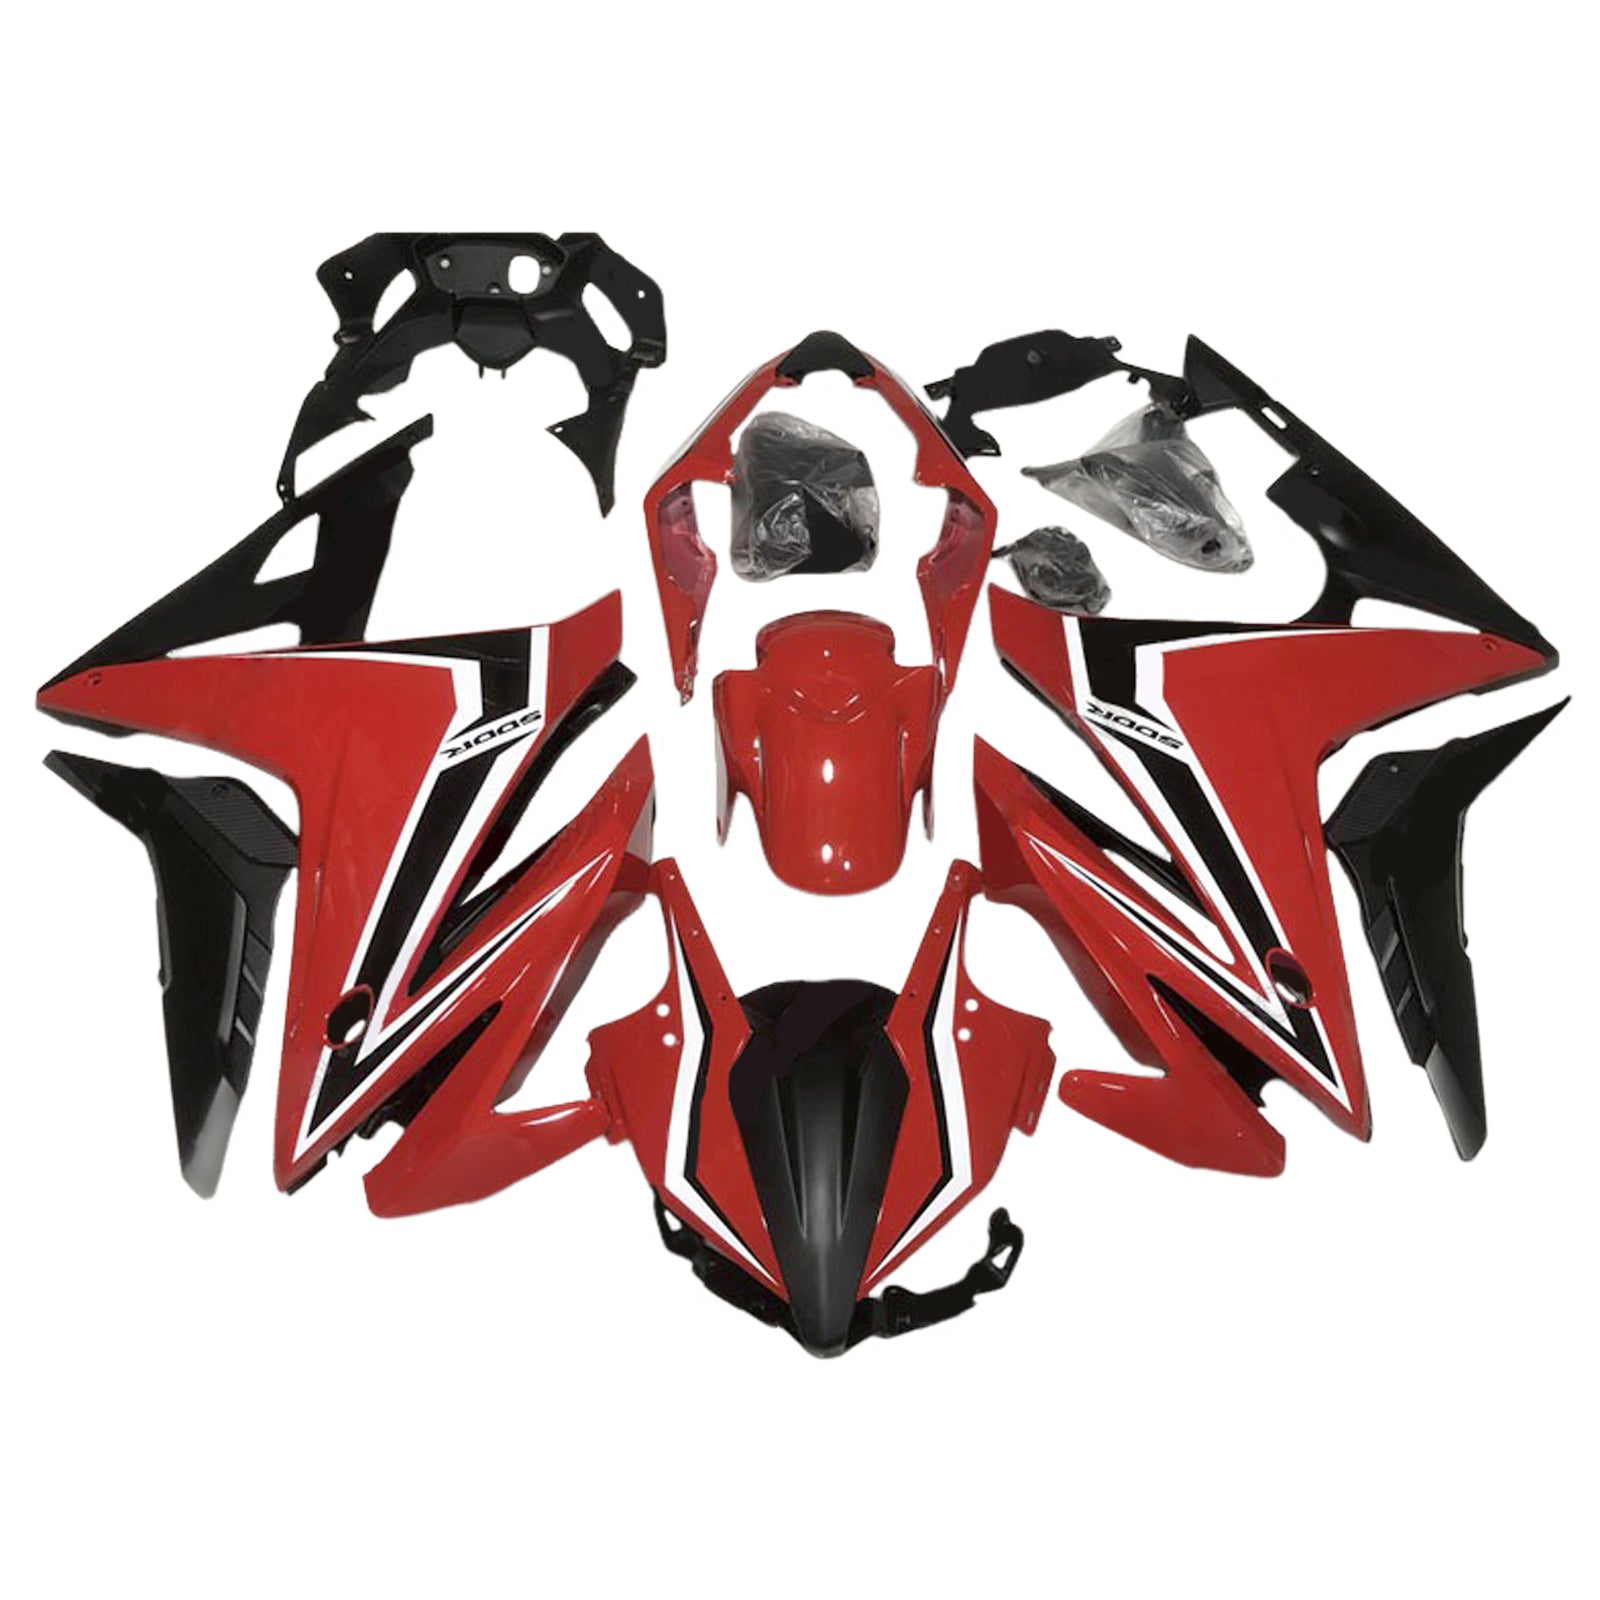 Kit carena Amotopart 2016-2018 Honda CBR500R rosso nero